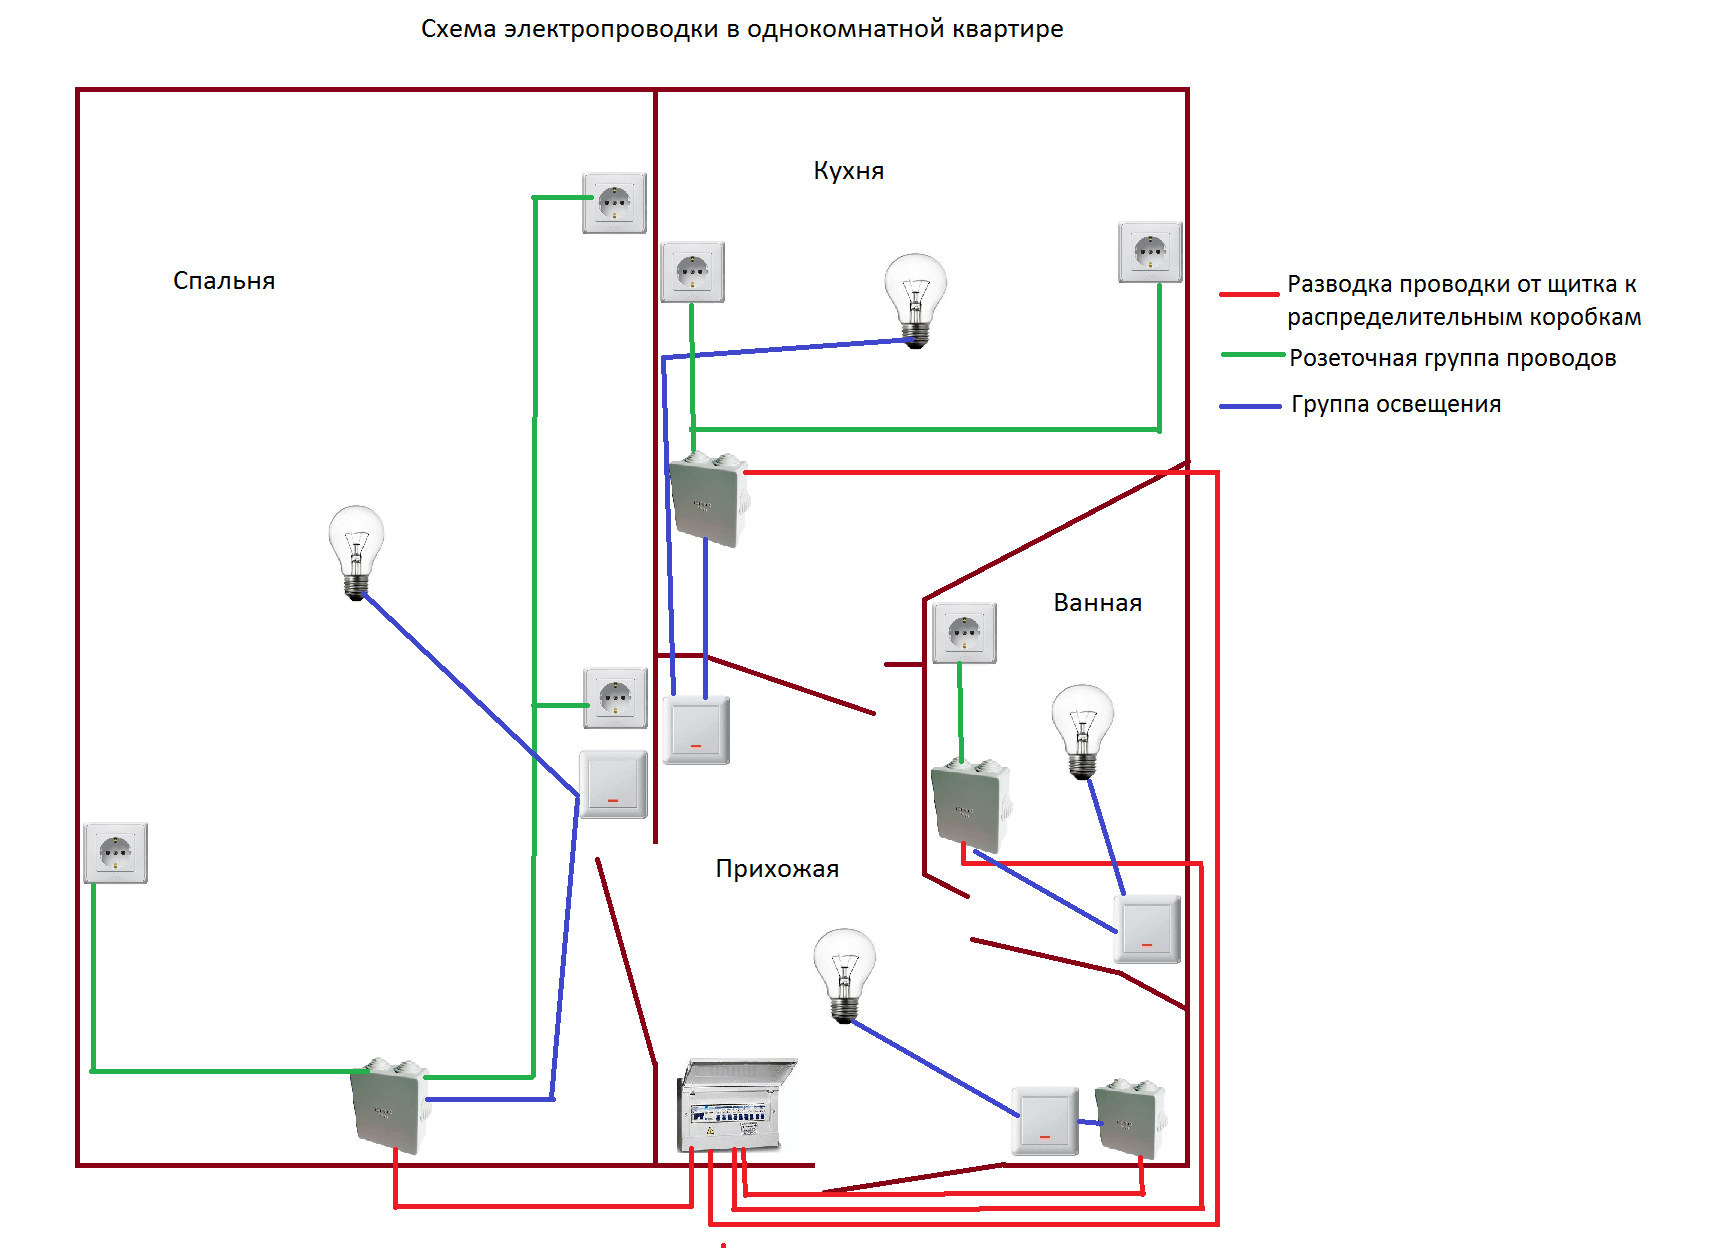 Электропроводка в жилом помещении